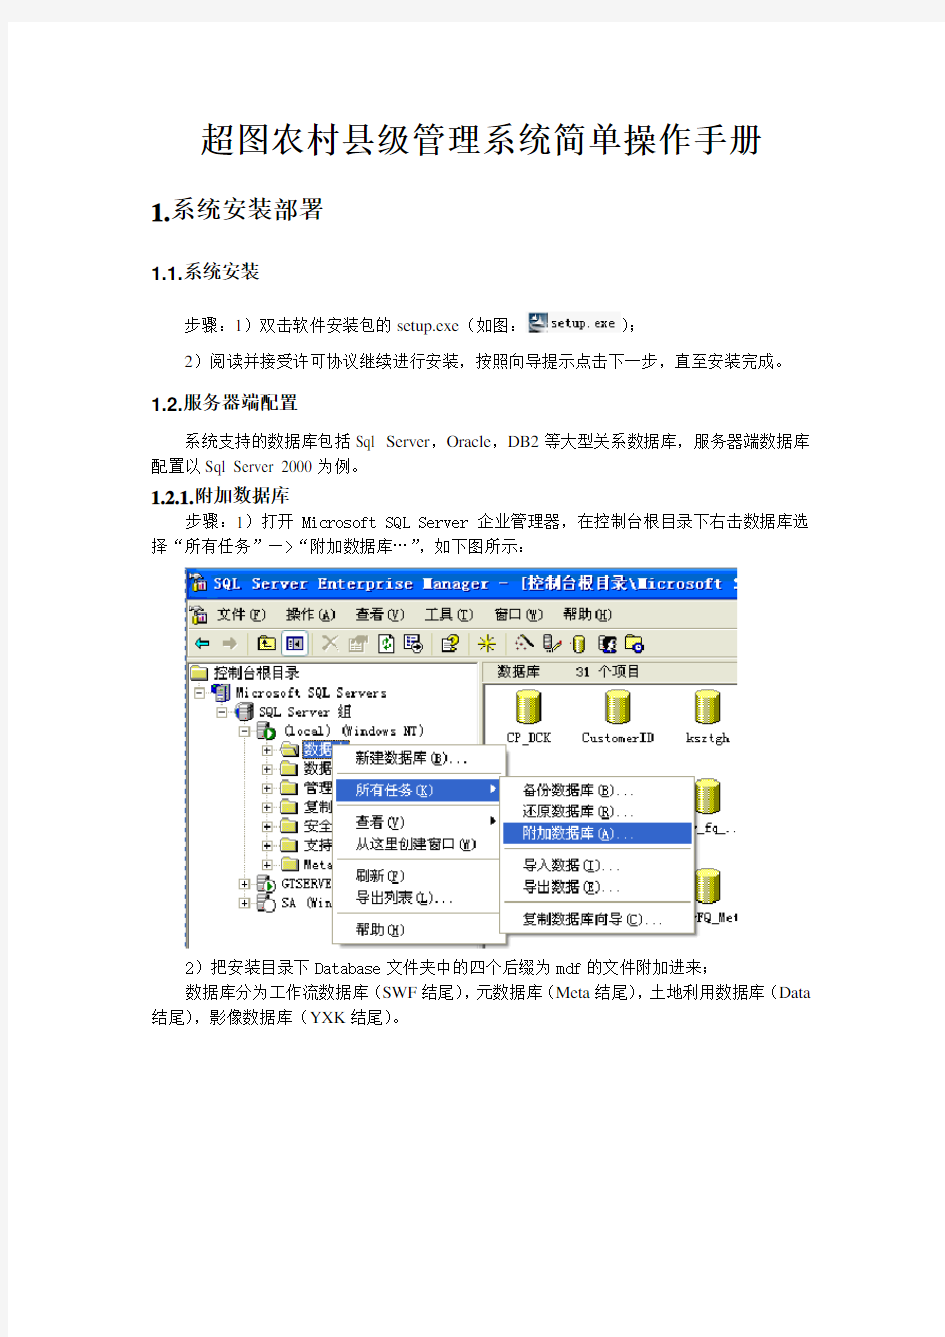 超图农村管理系统简单操作手册